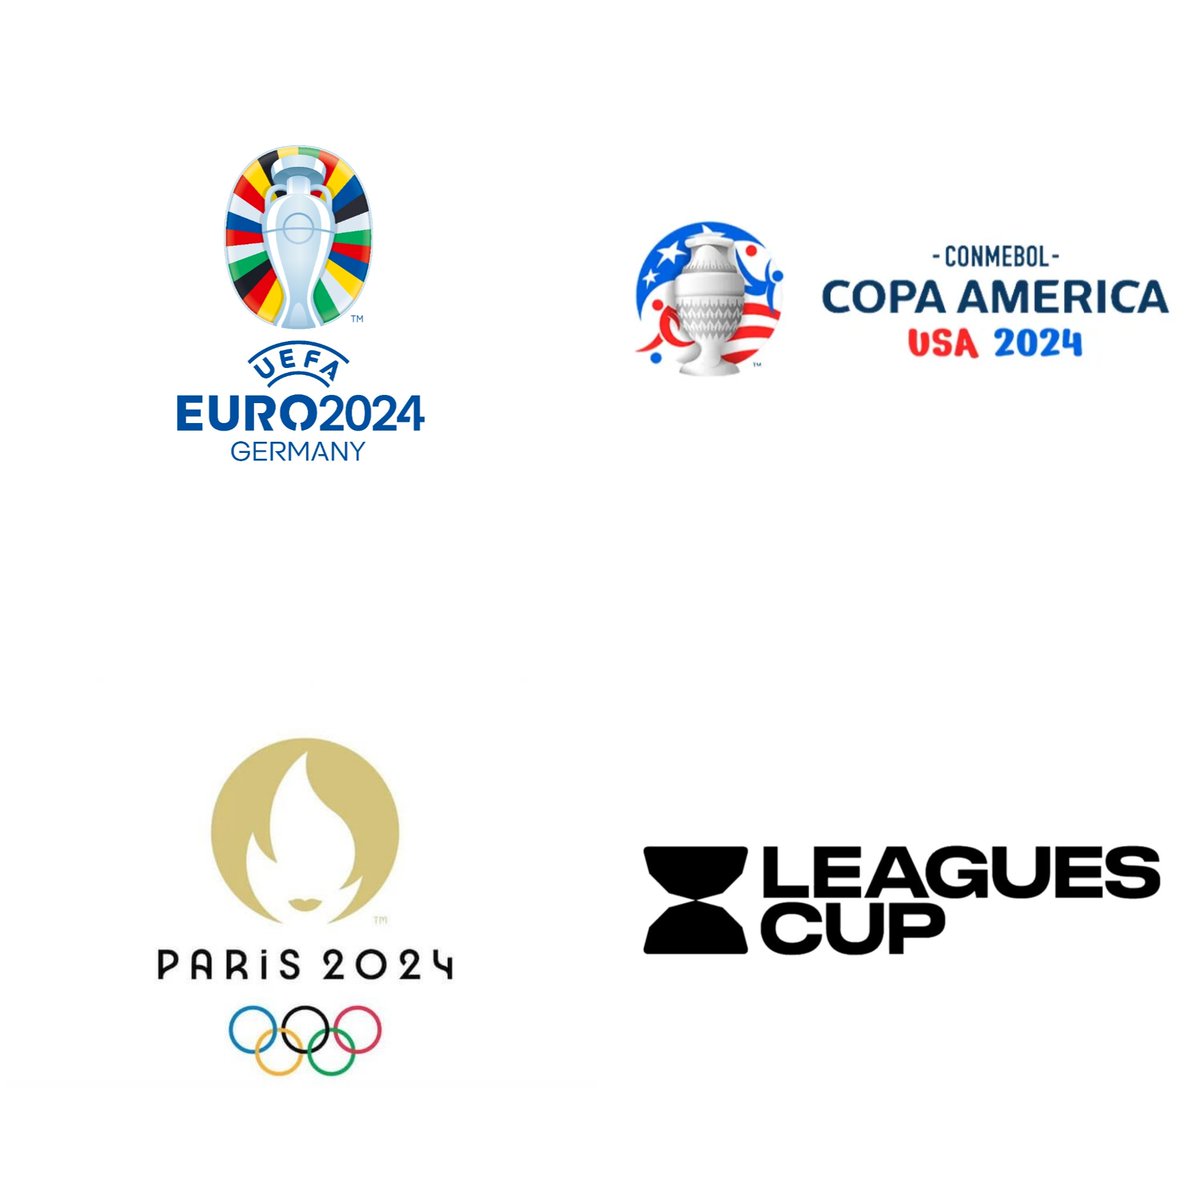 Los torneos del verano en el 2024. 🔷 Eurocopa: 14 Jun al 14 Jul 🔷 Copa América: 20 Jun al 15 Jul 🔷 París 2024: 26 Jul al 11 Ago 🔷 Leagues Cup: 26 Jul al 25 Ago